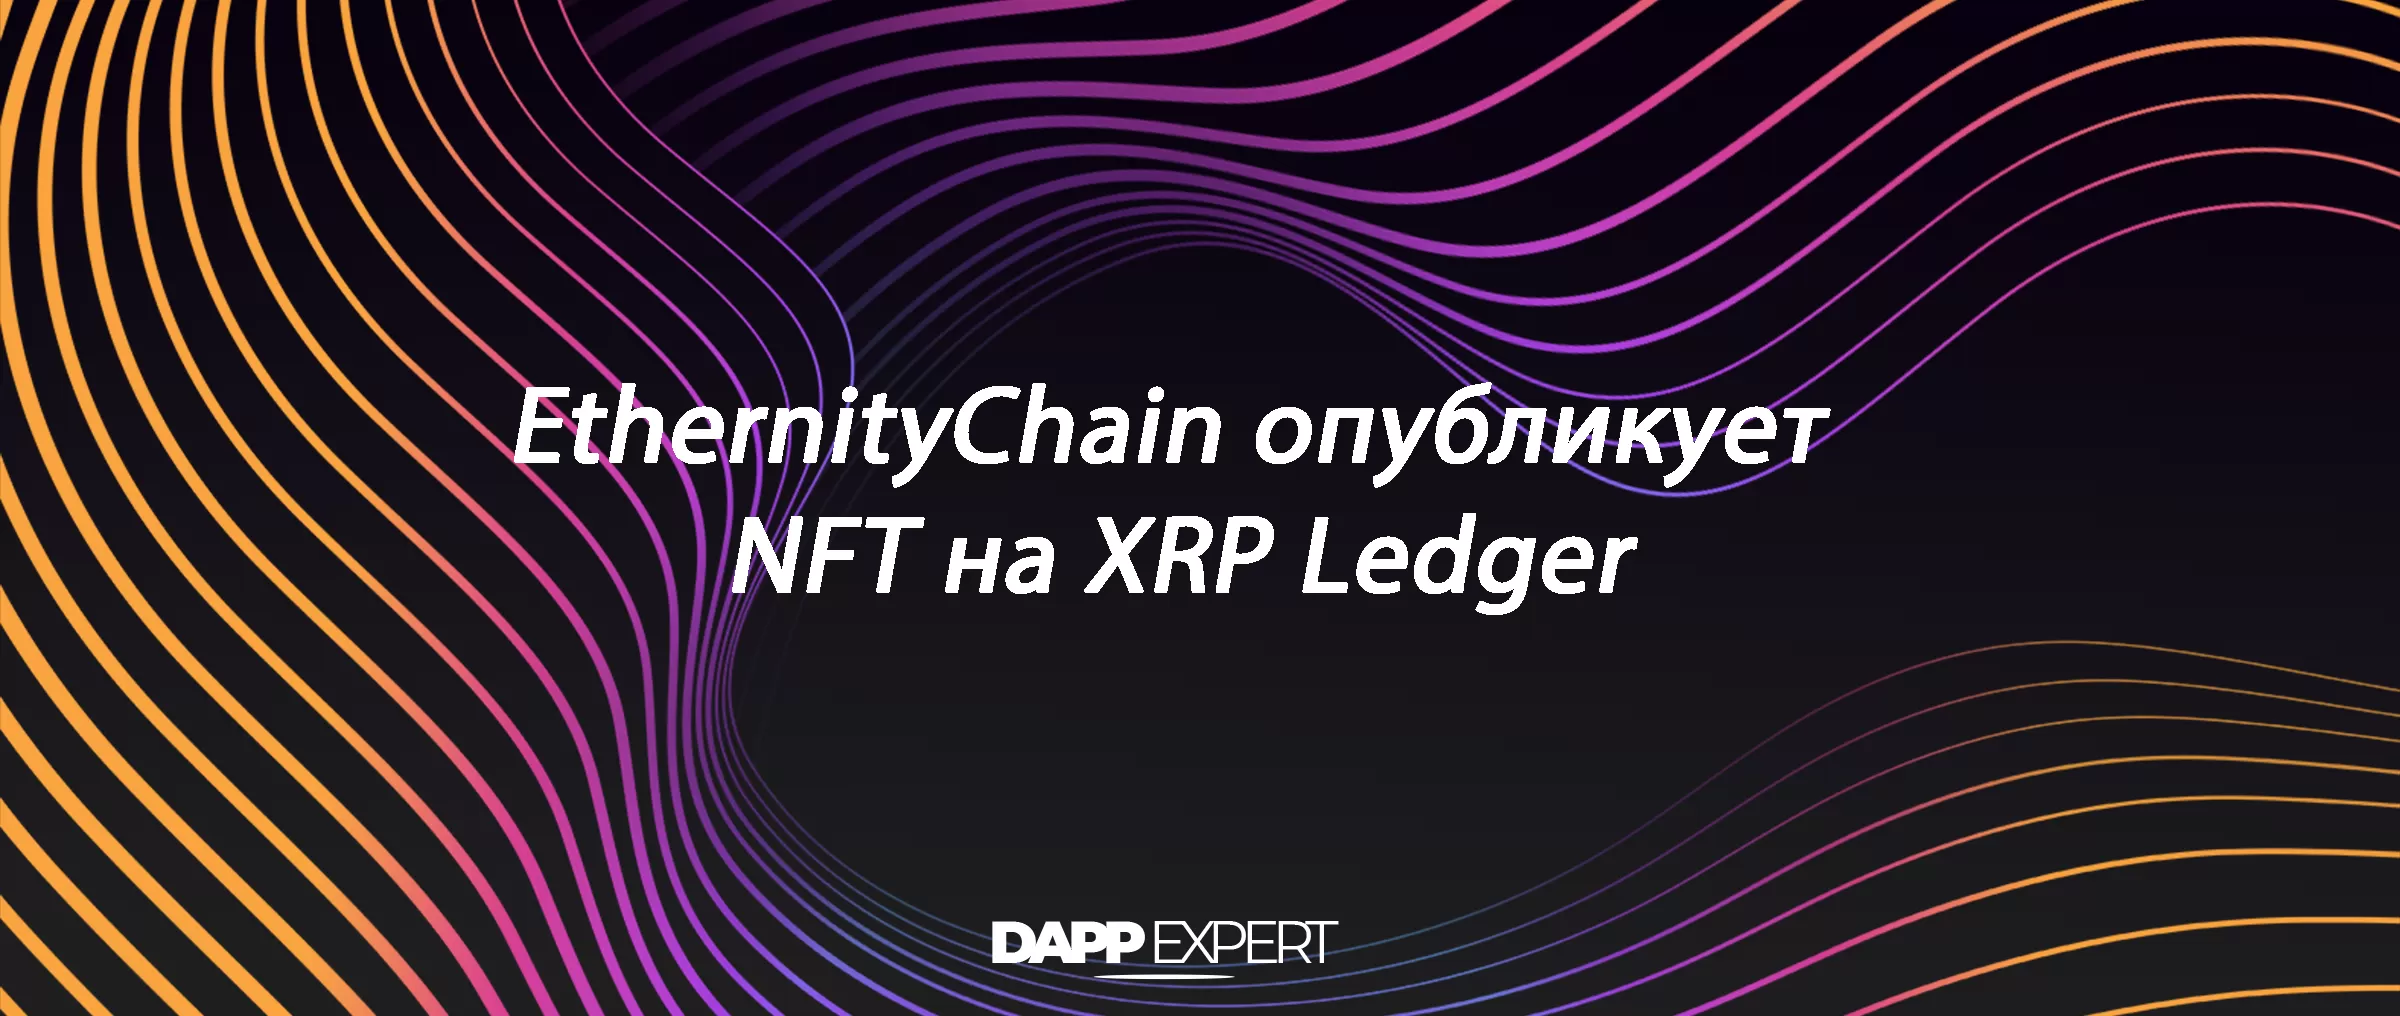 EthernityChain опубликует NFT на XRP Ledger